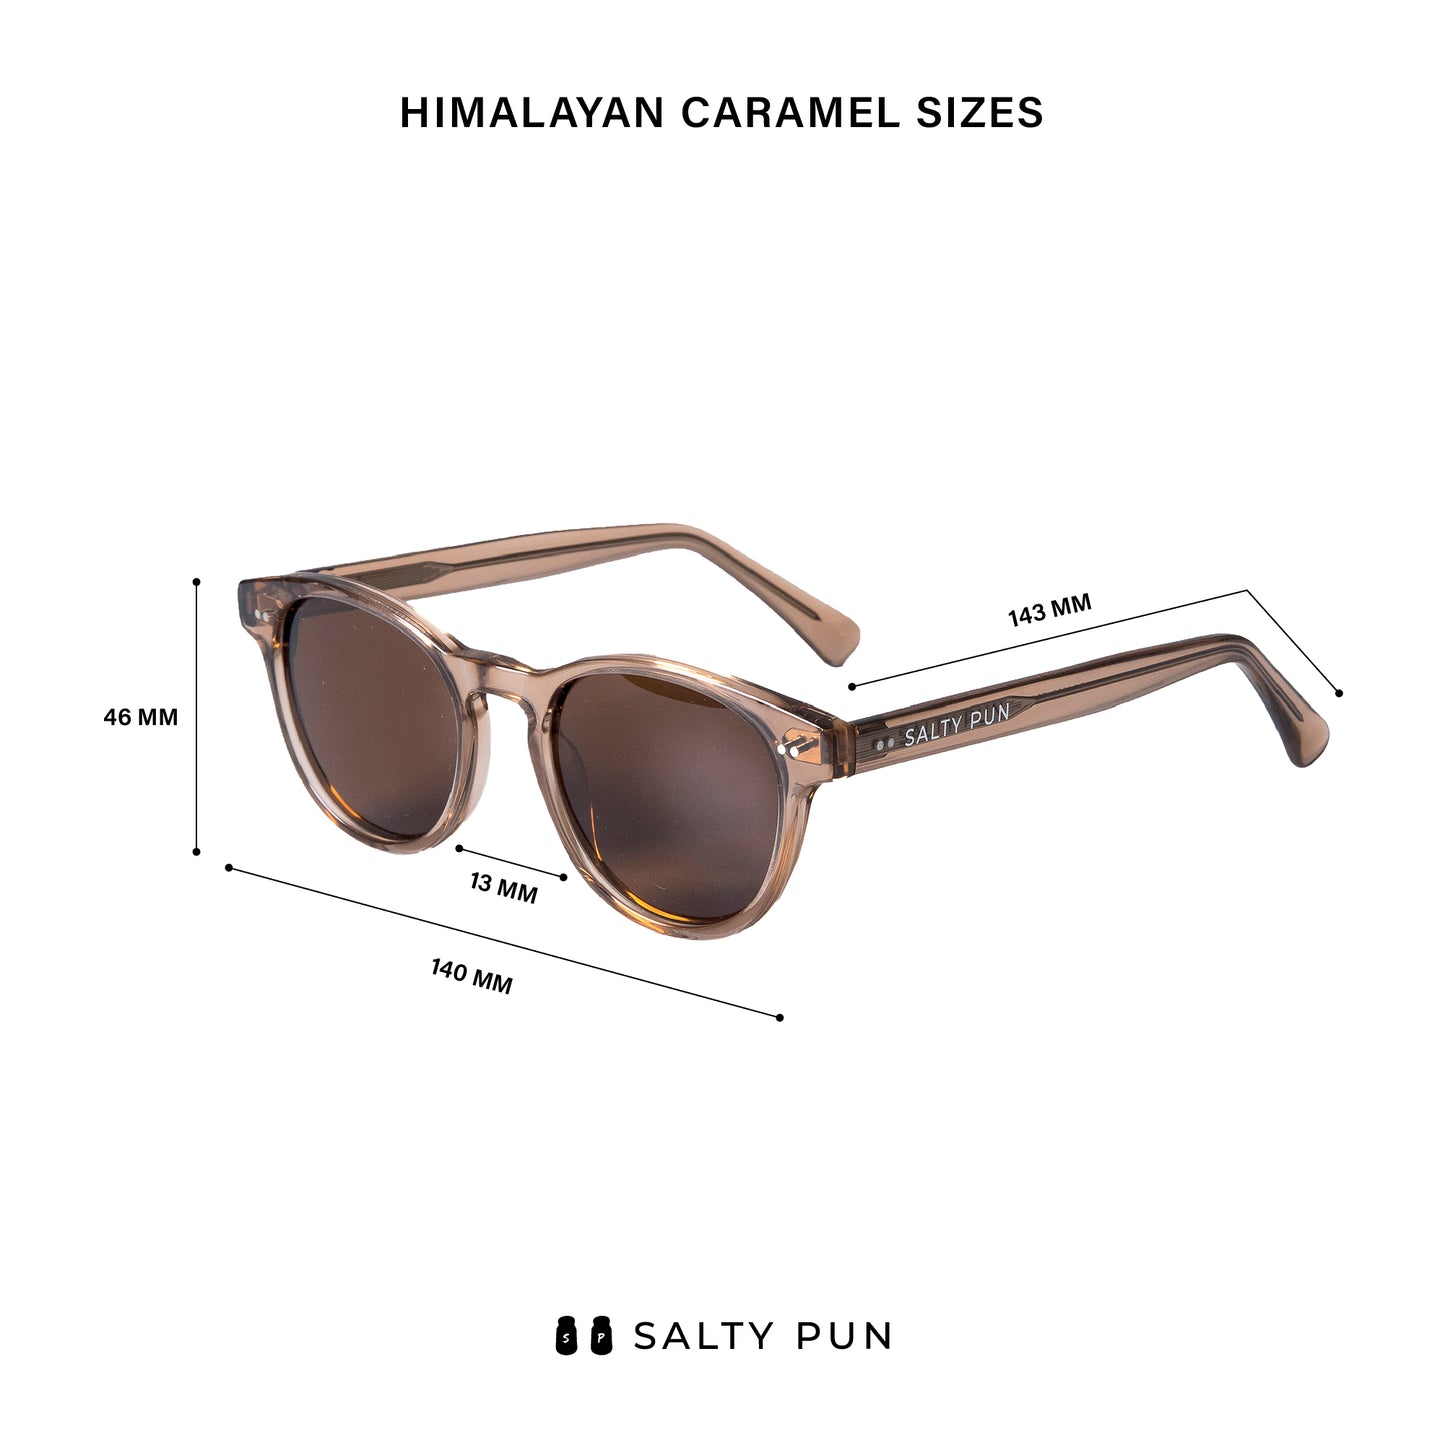 Polarized Sunglasses - Himalayan Caramel